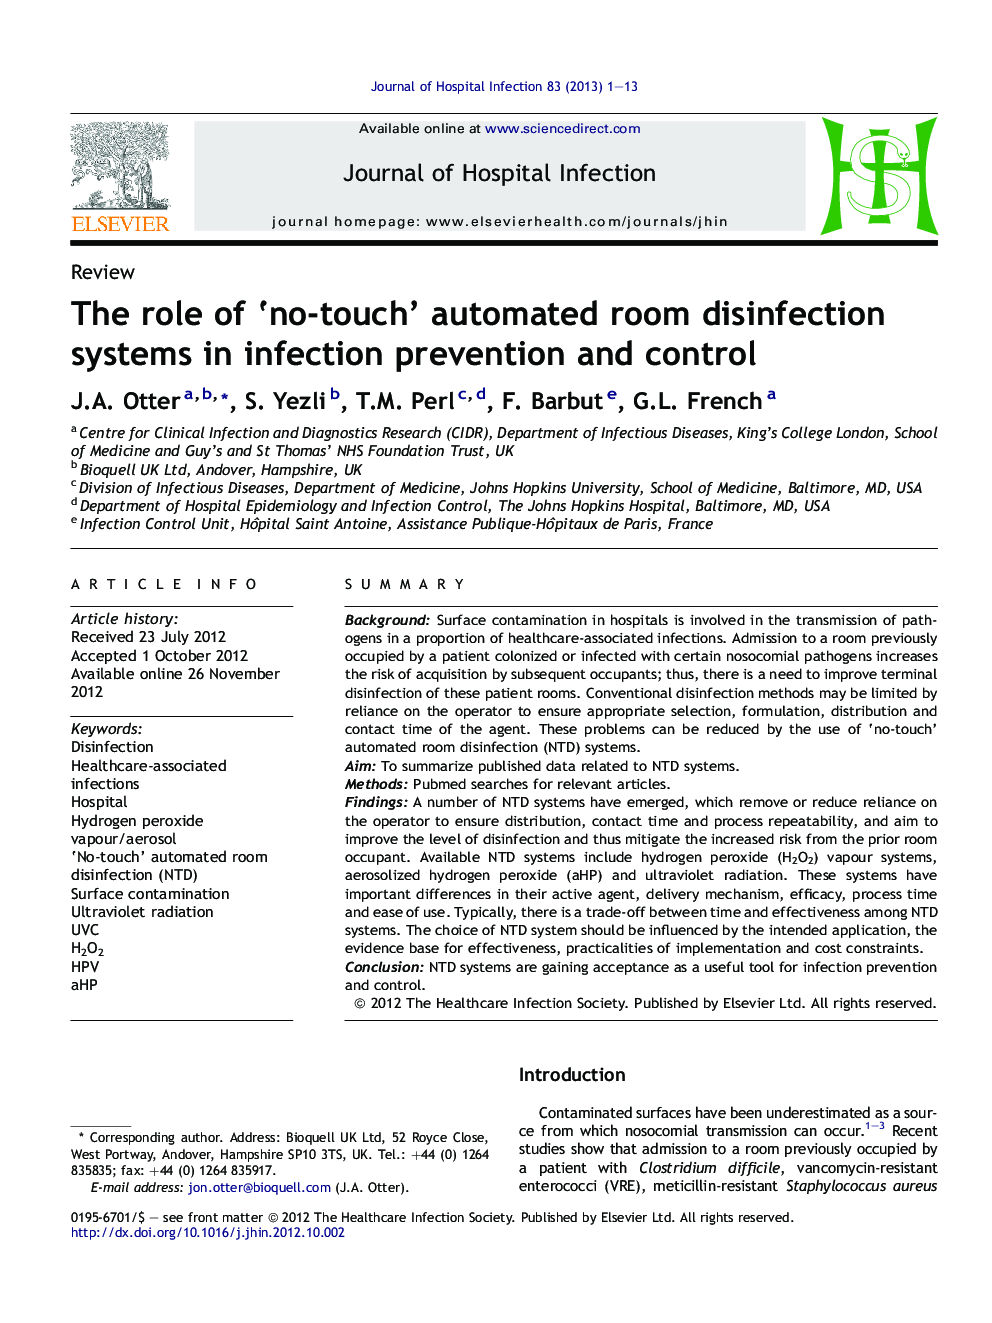 نقش سیستم ضد عفونی اتاق اتوماتیک "بدون تماس" در پیشگیری و کنترل عفونت 